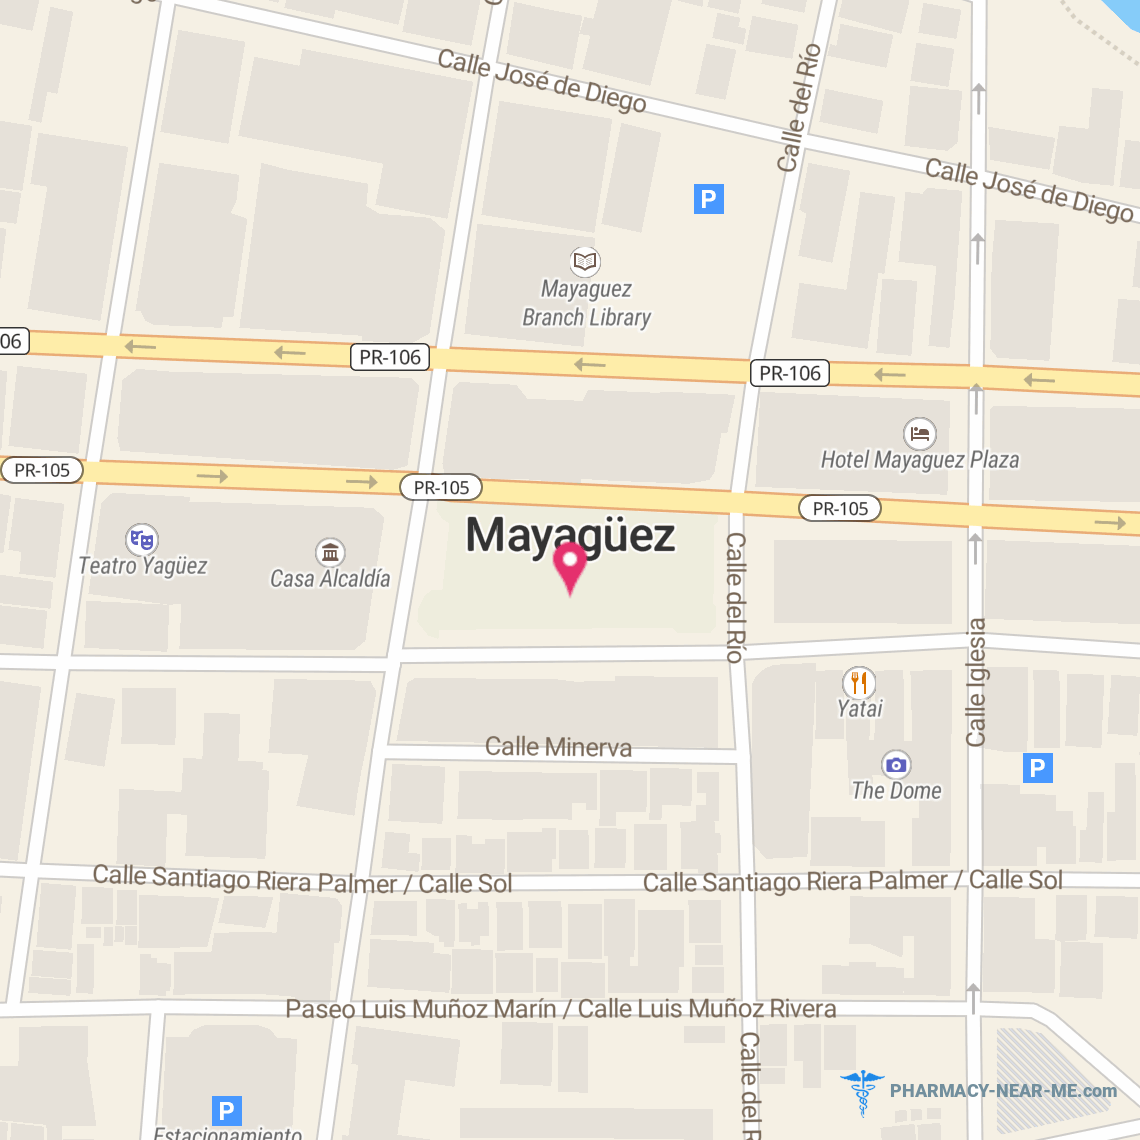 FARMACIA BELMONTE, INC. - Pharmacy Hours, Phone, Reviews & Information: Mayagüez, PR